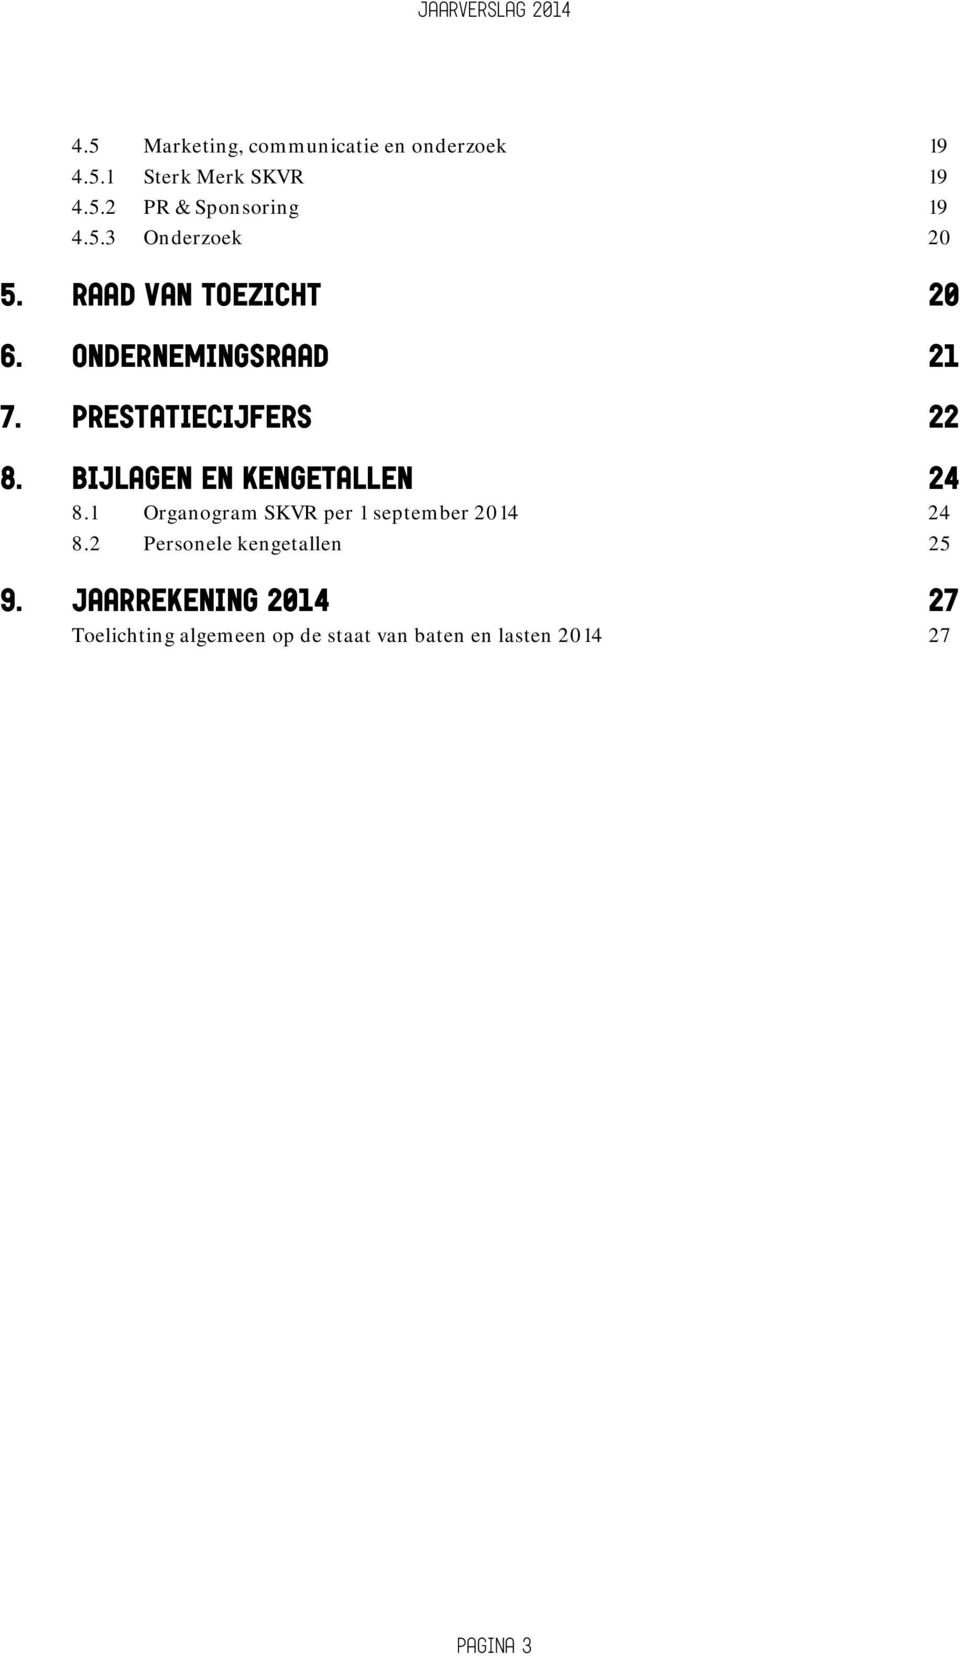 Bijlagen en kengetallen 24 8.1 Organogram SKVR per 1 september 2014 24 8.